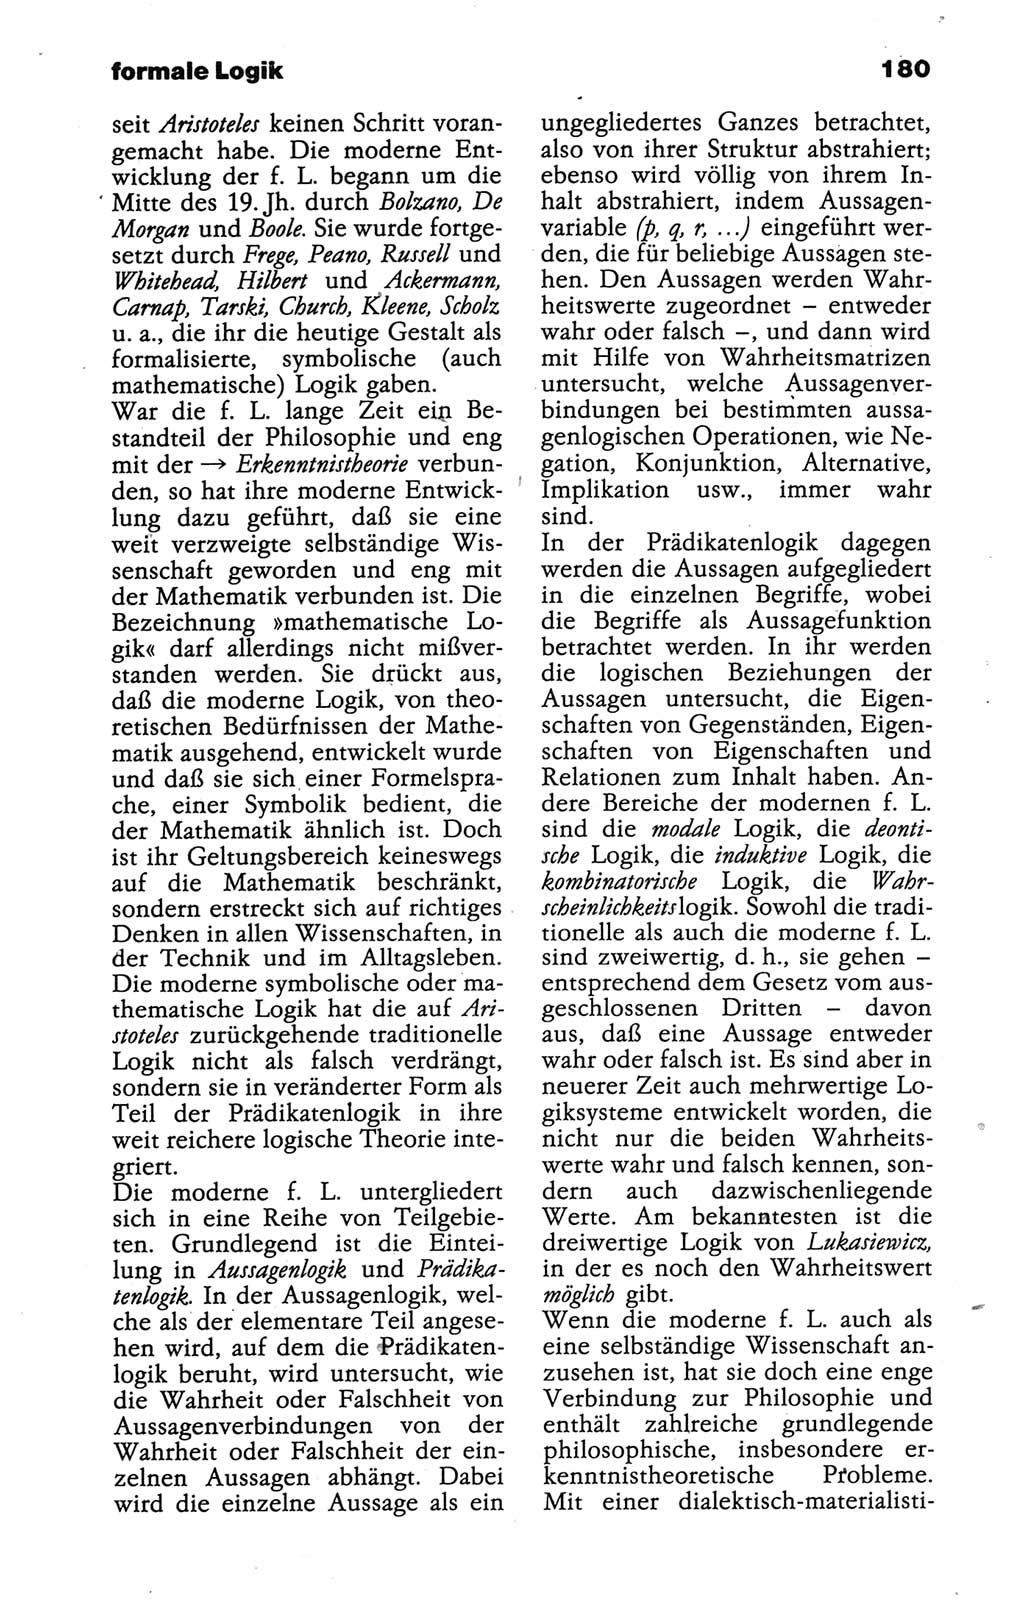 Wörterbuch der marxistisch-leninistischen Philosophie [Deutsche Demokratische Republik (DDR)] 1986, Seite 180 (Wb. ML Phil. DDR 1986, S. 180)